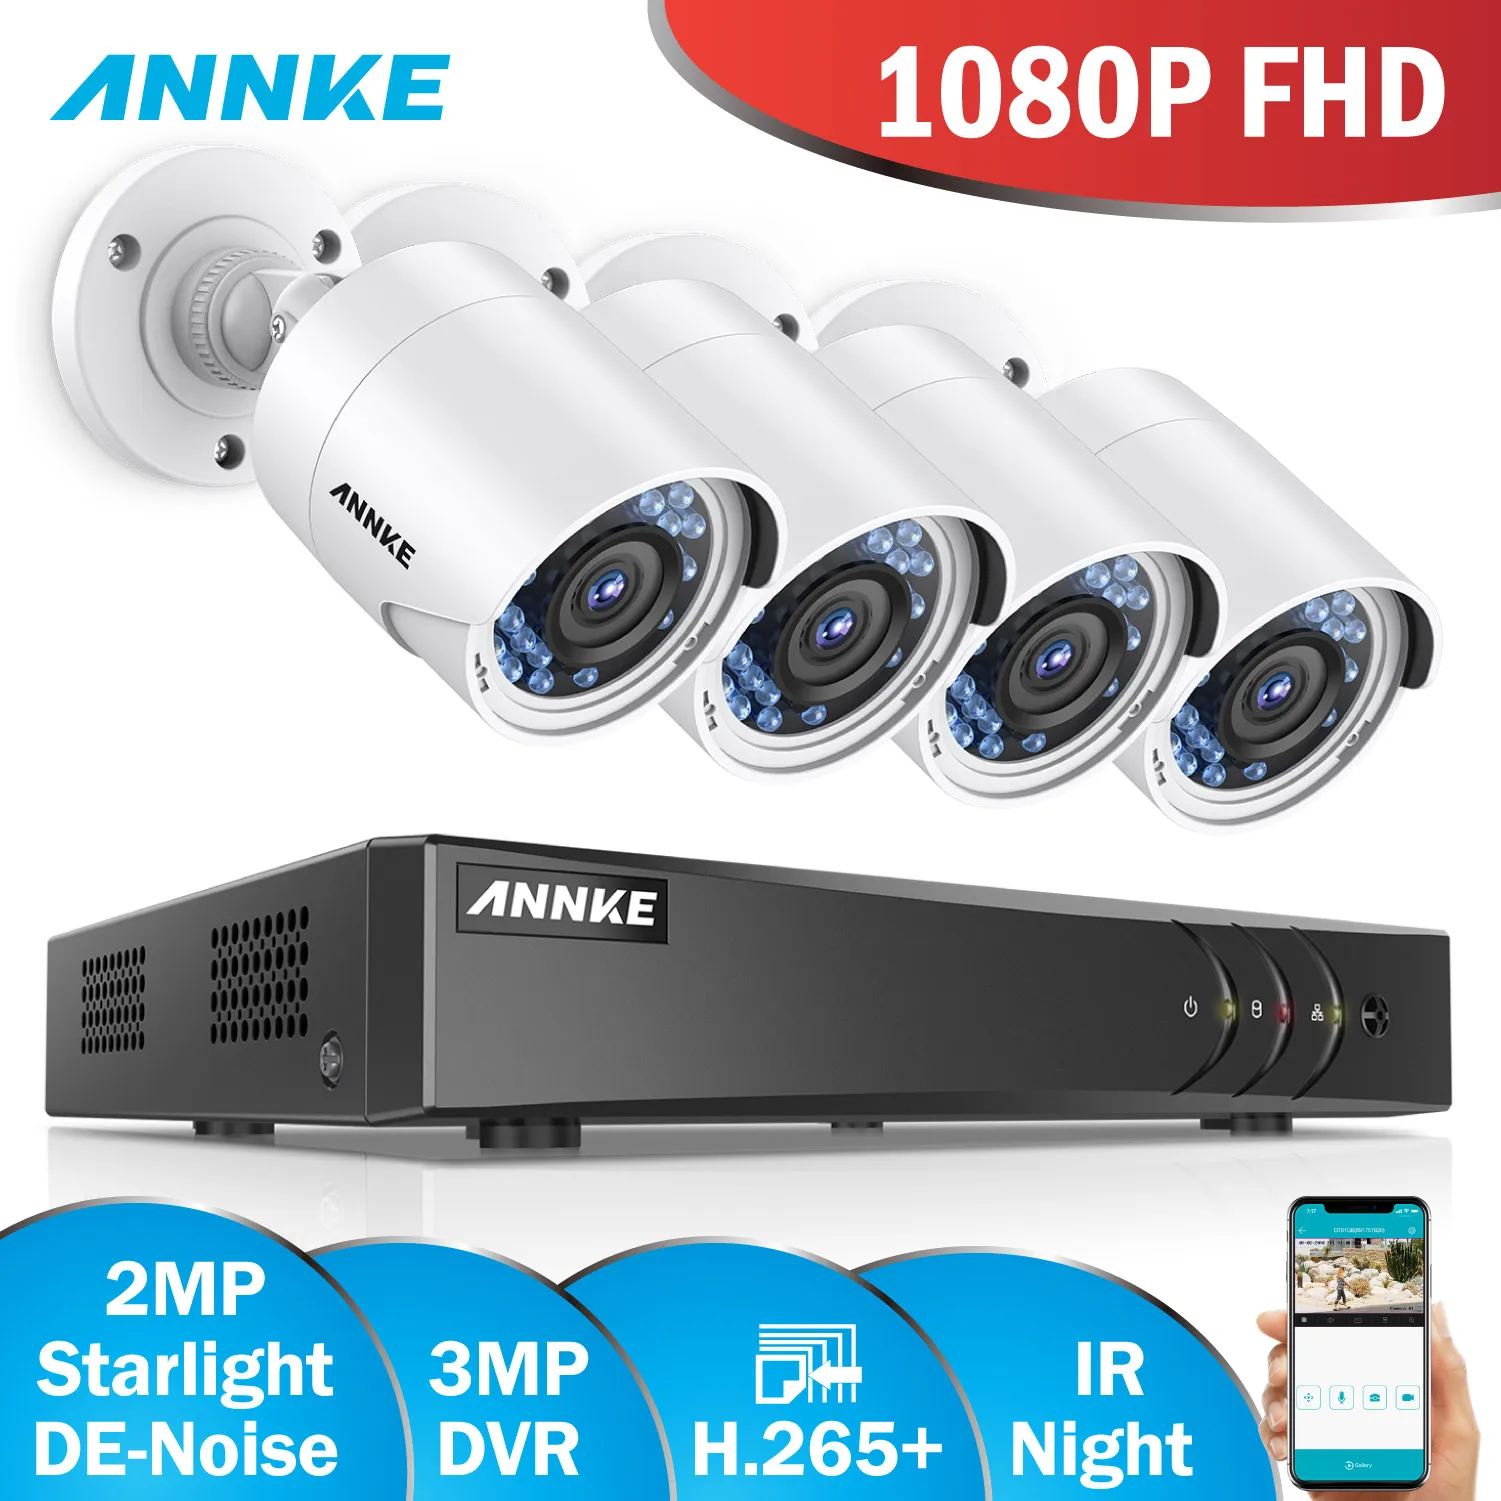 ANNKE 1080P HD камера безопасности Система 4CH DVR комплект 1080P HDMI CCTV система с 4 шт 2-мегапиксельная камера наружного наблюдения